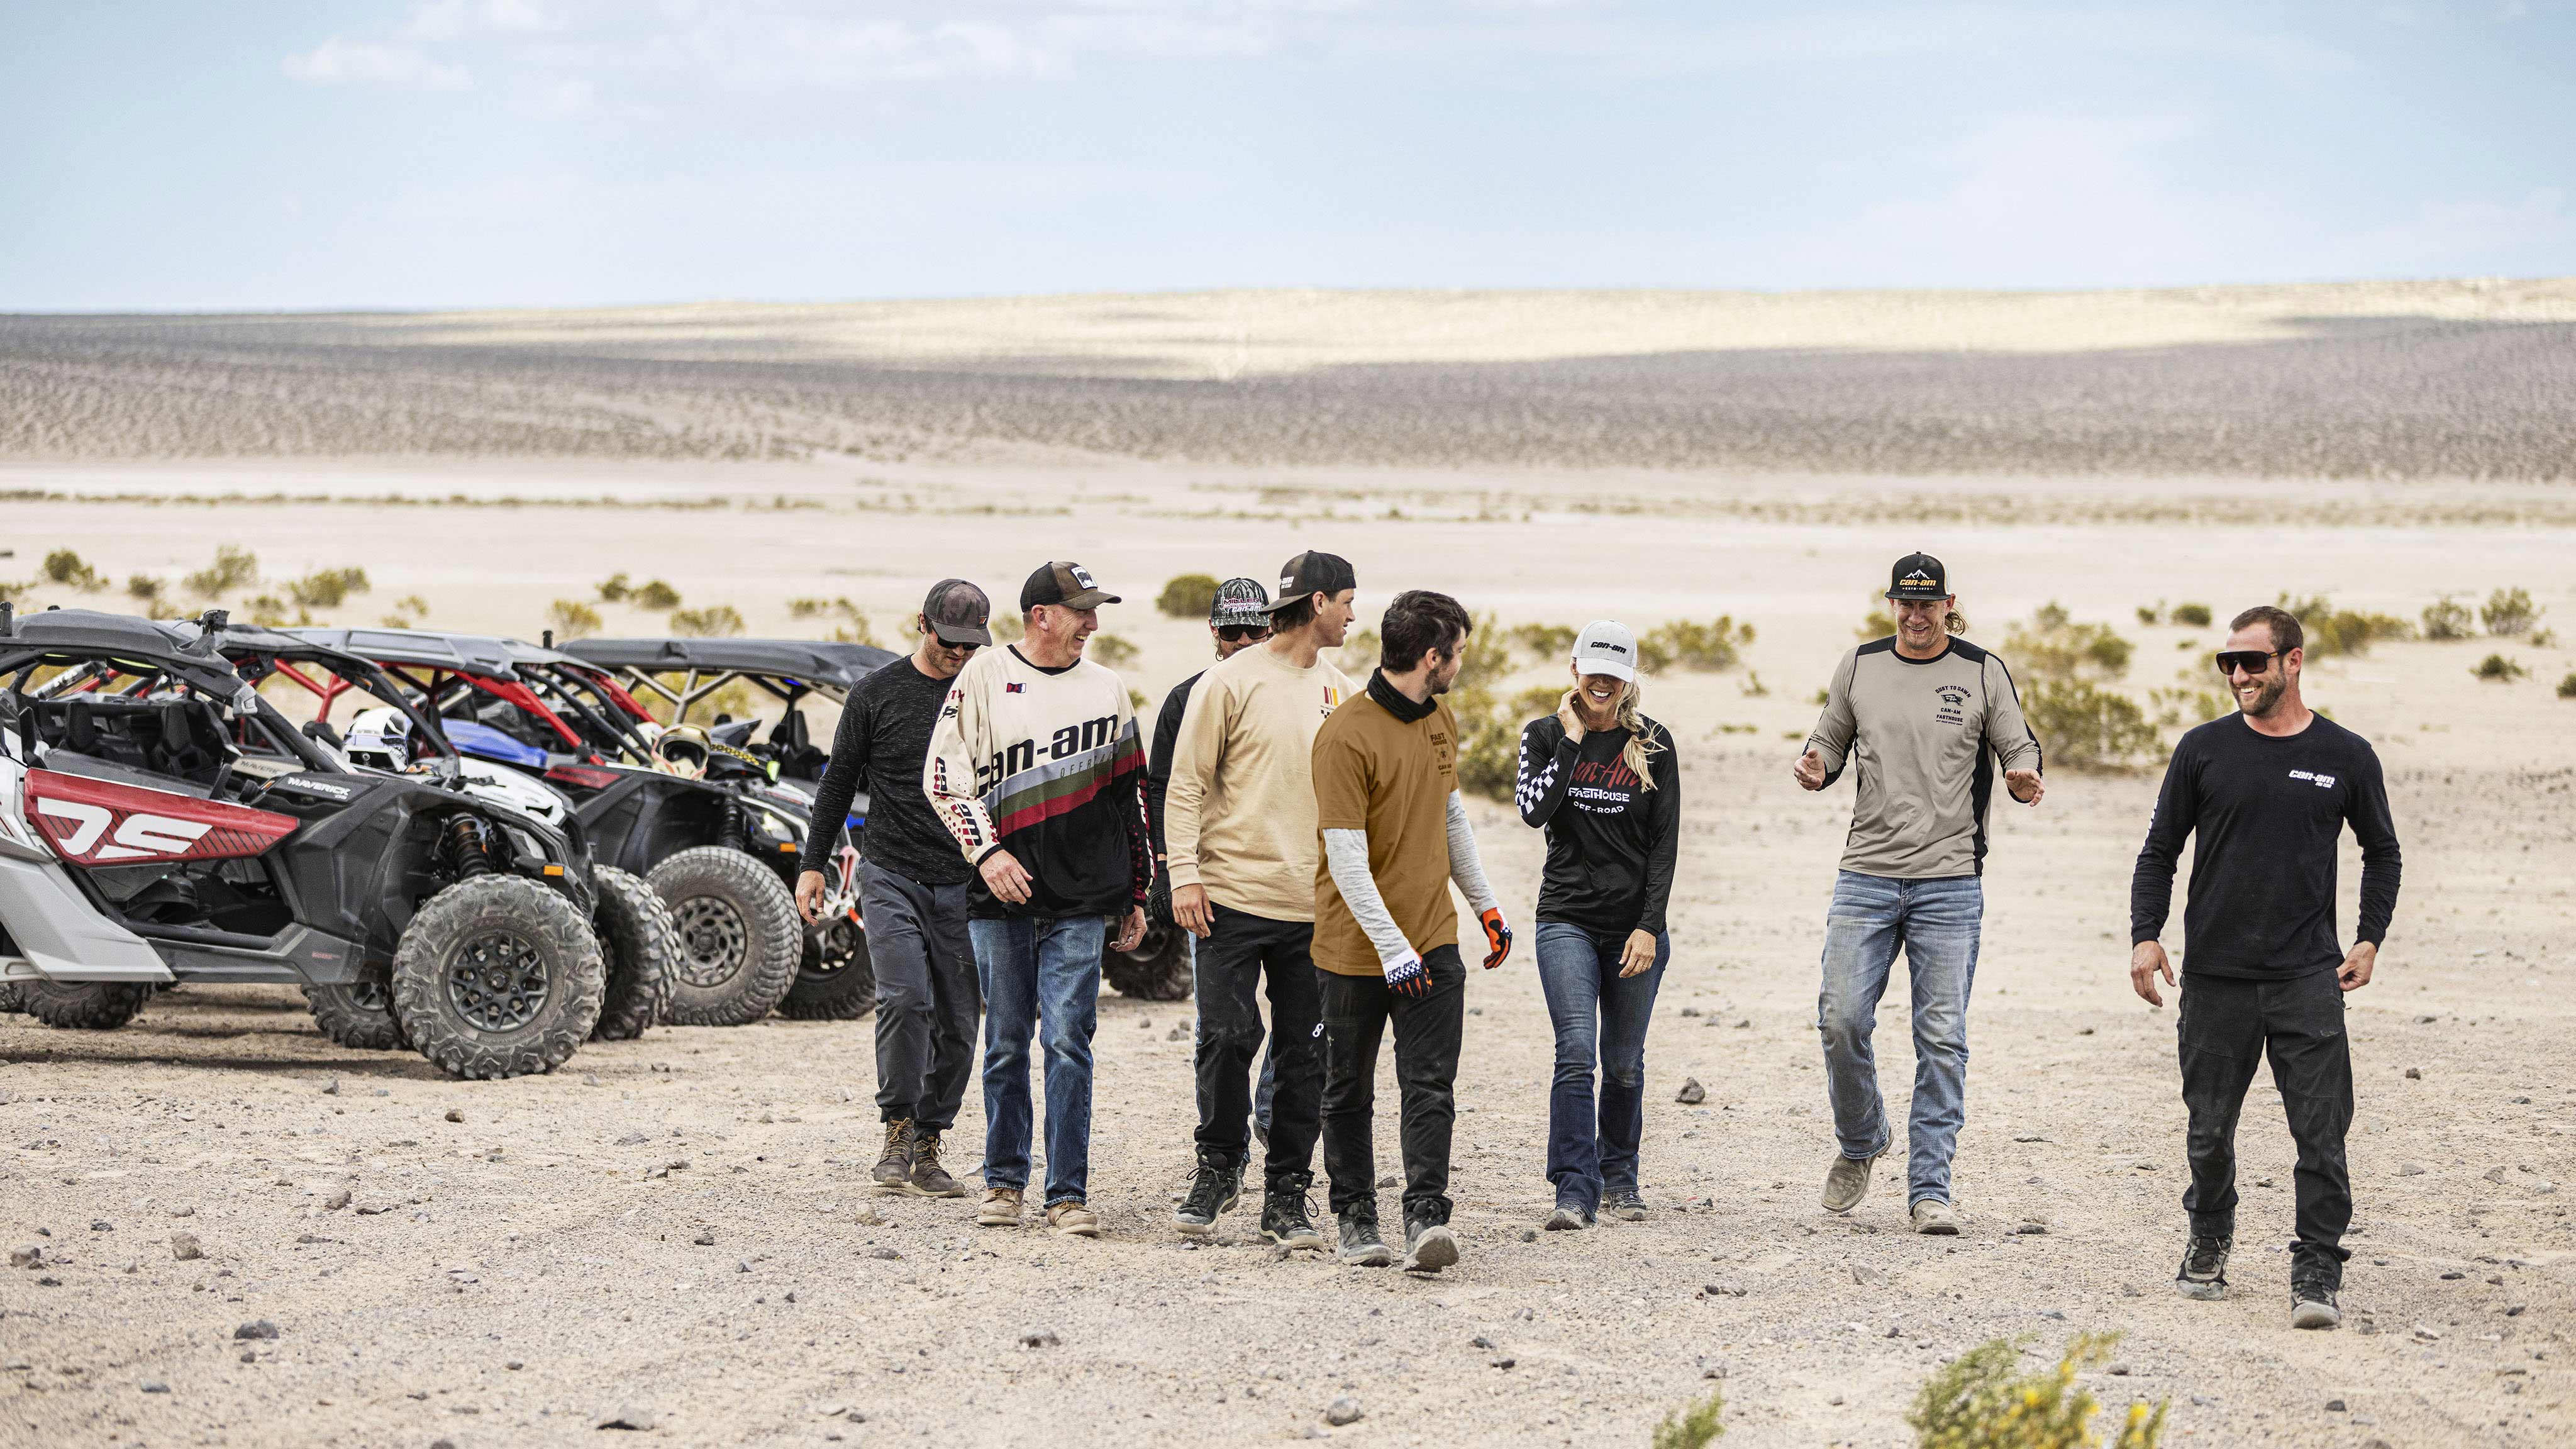 Åtte ryttere går fremover i ørkenen, med tre Can-Am Maverick-biler i bakgrunnen.